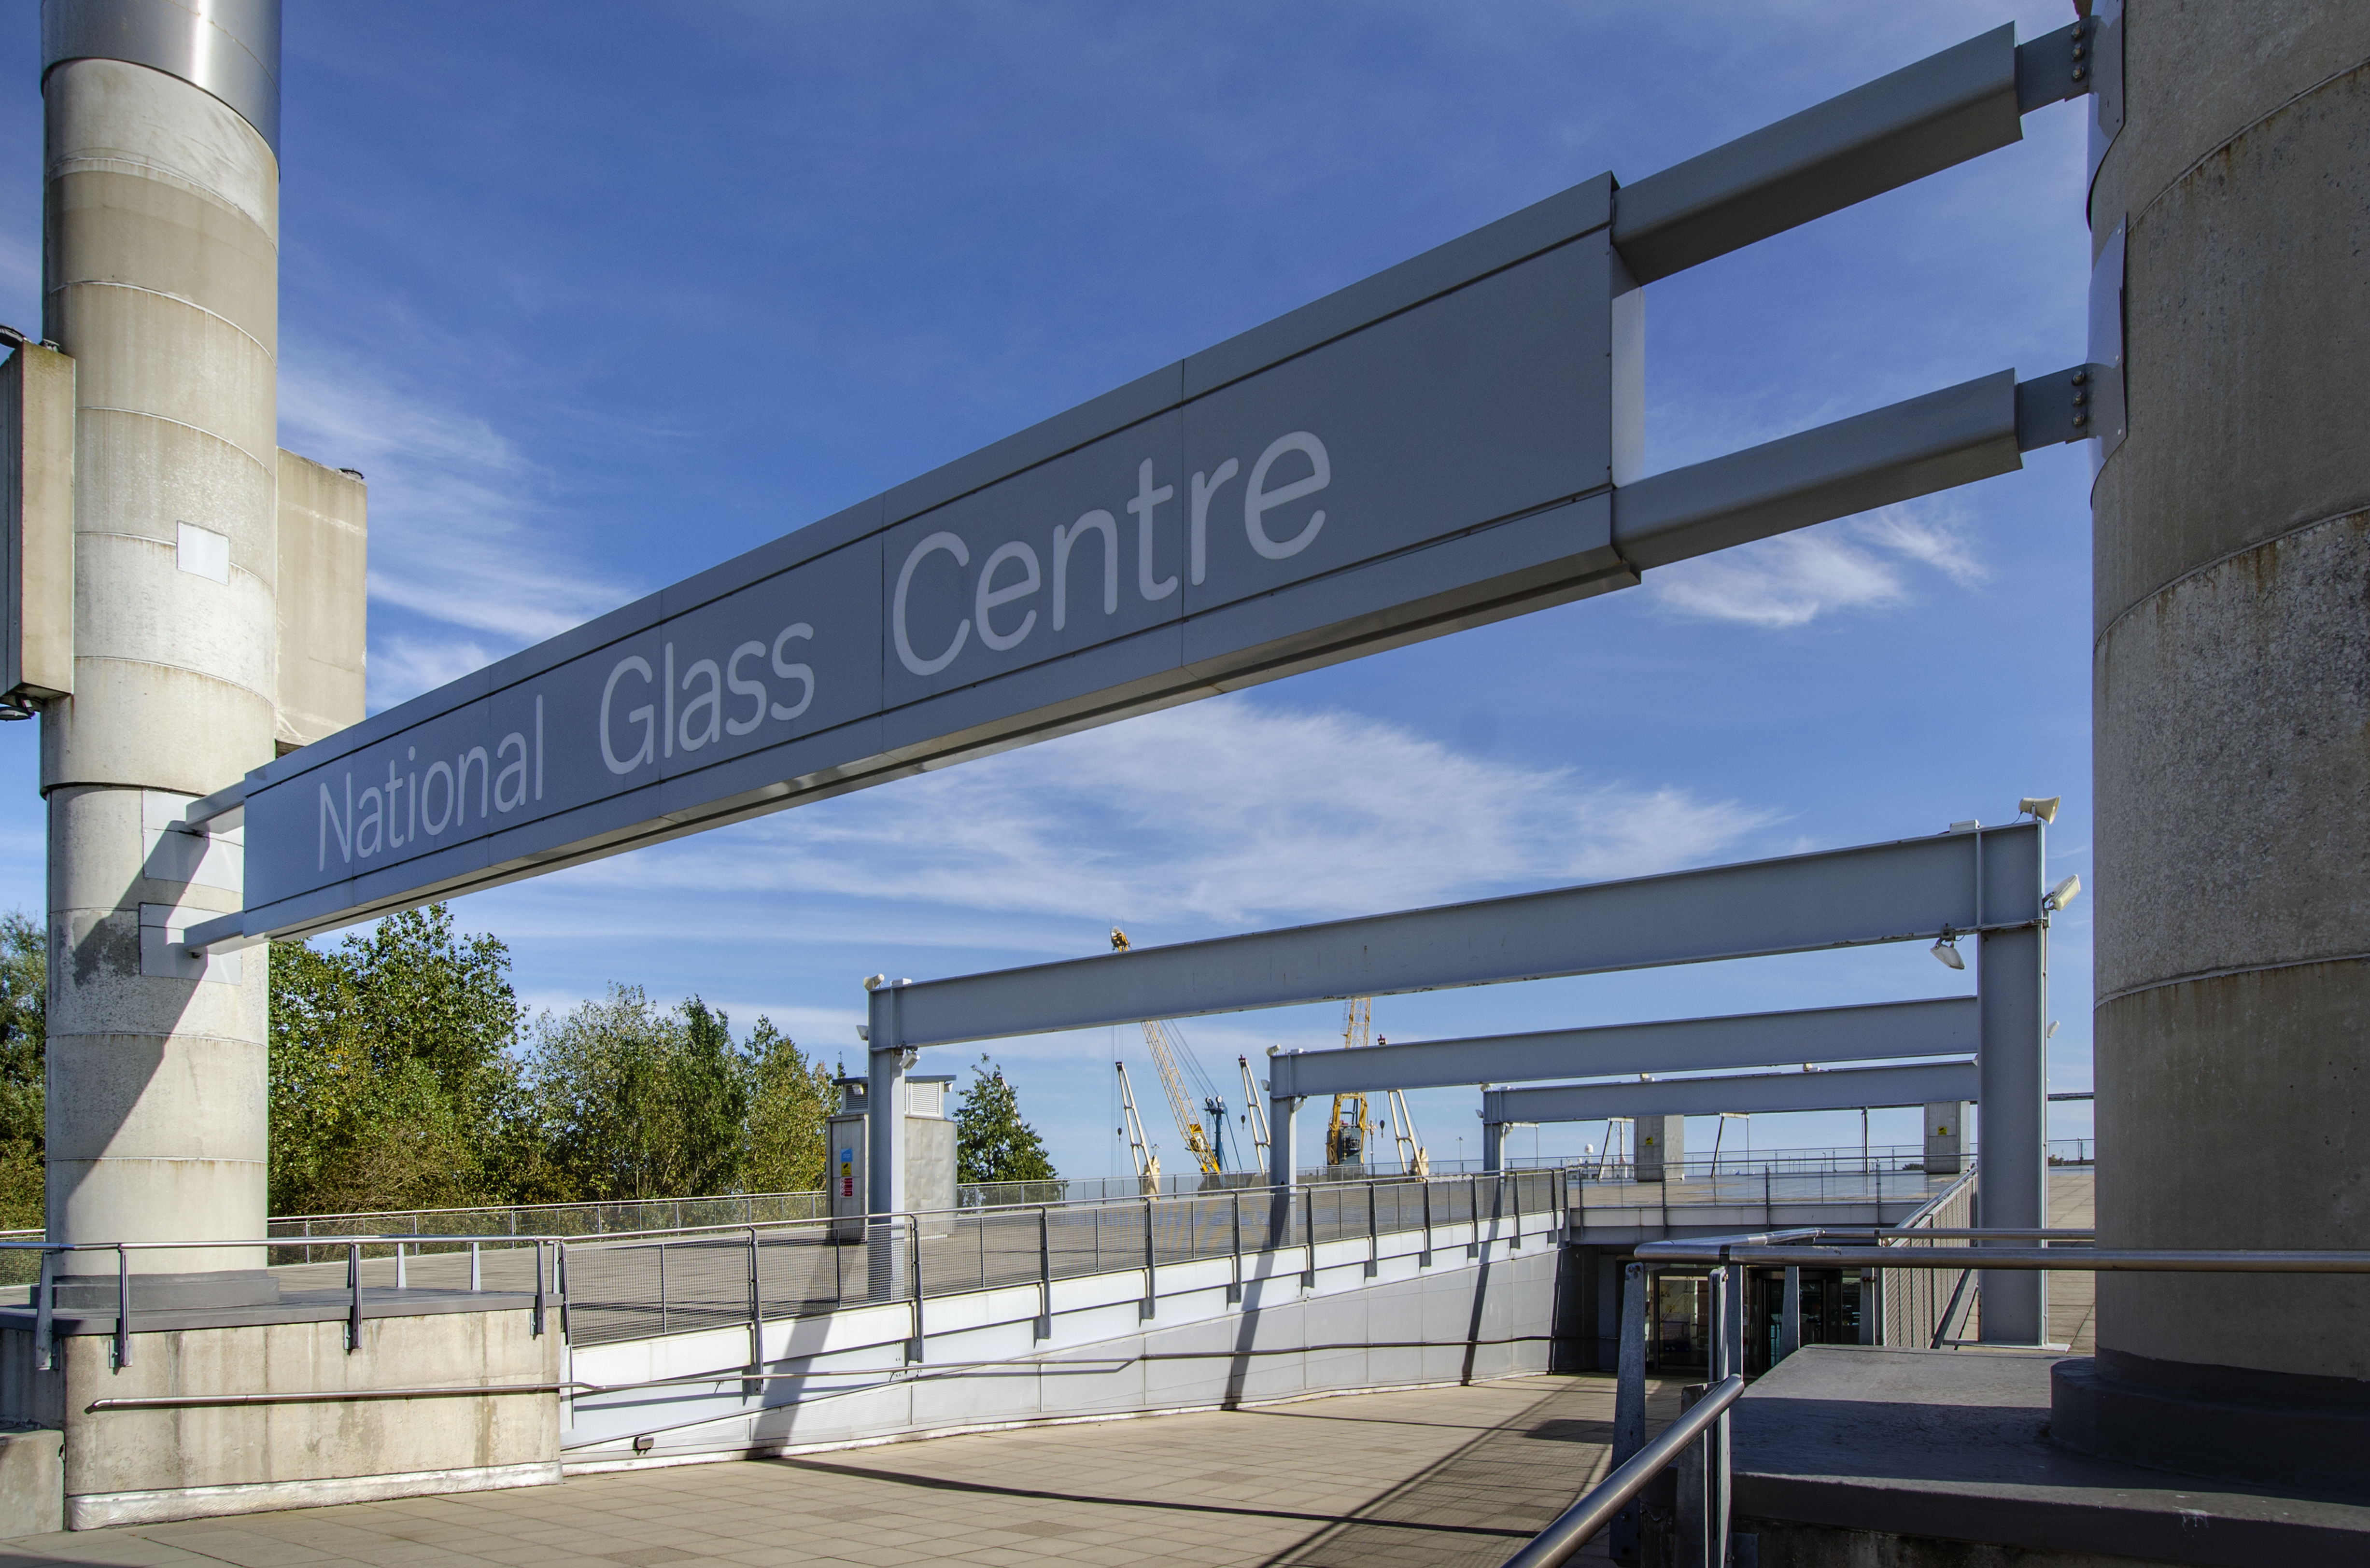 National Glass Centre, Sunderland. 